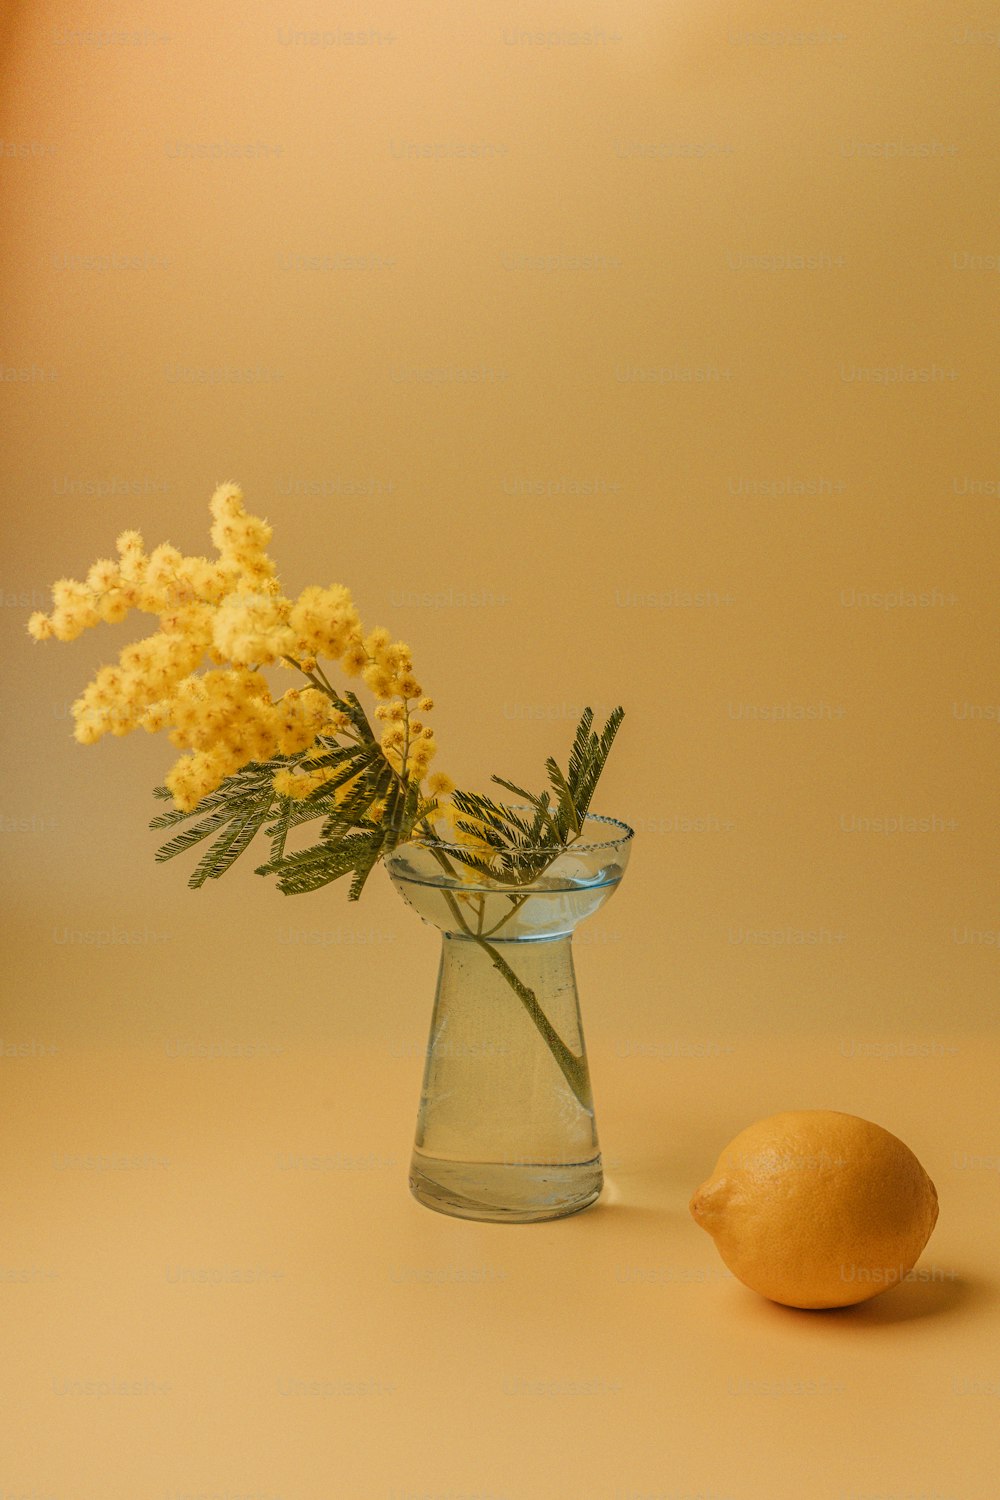 una flor amarilla en un jarrón de vidrio junto a un limón